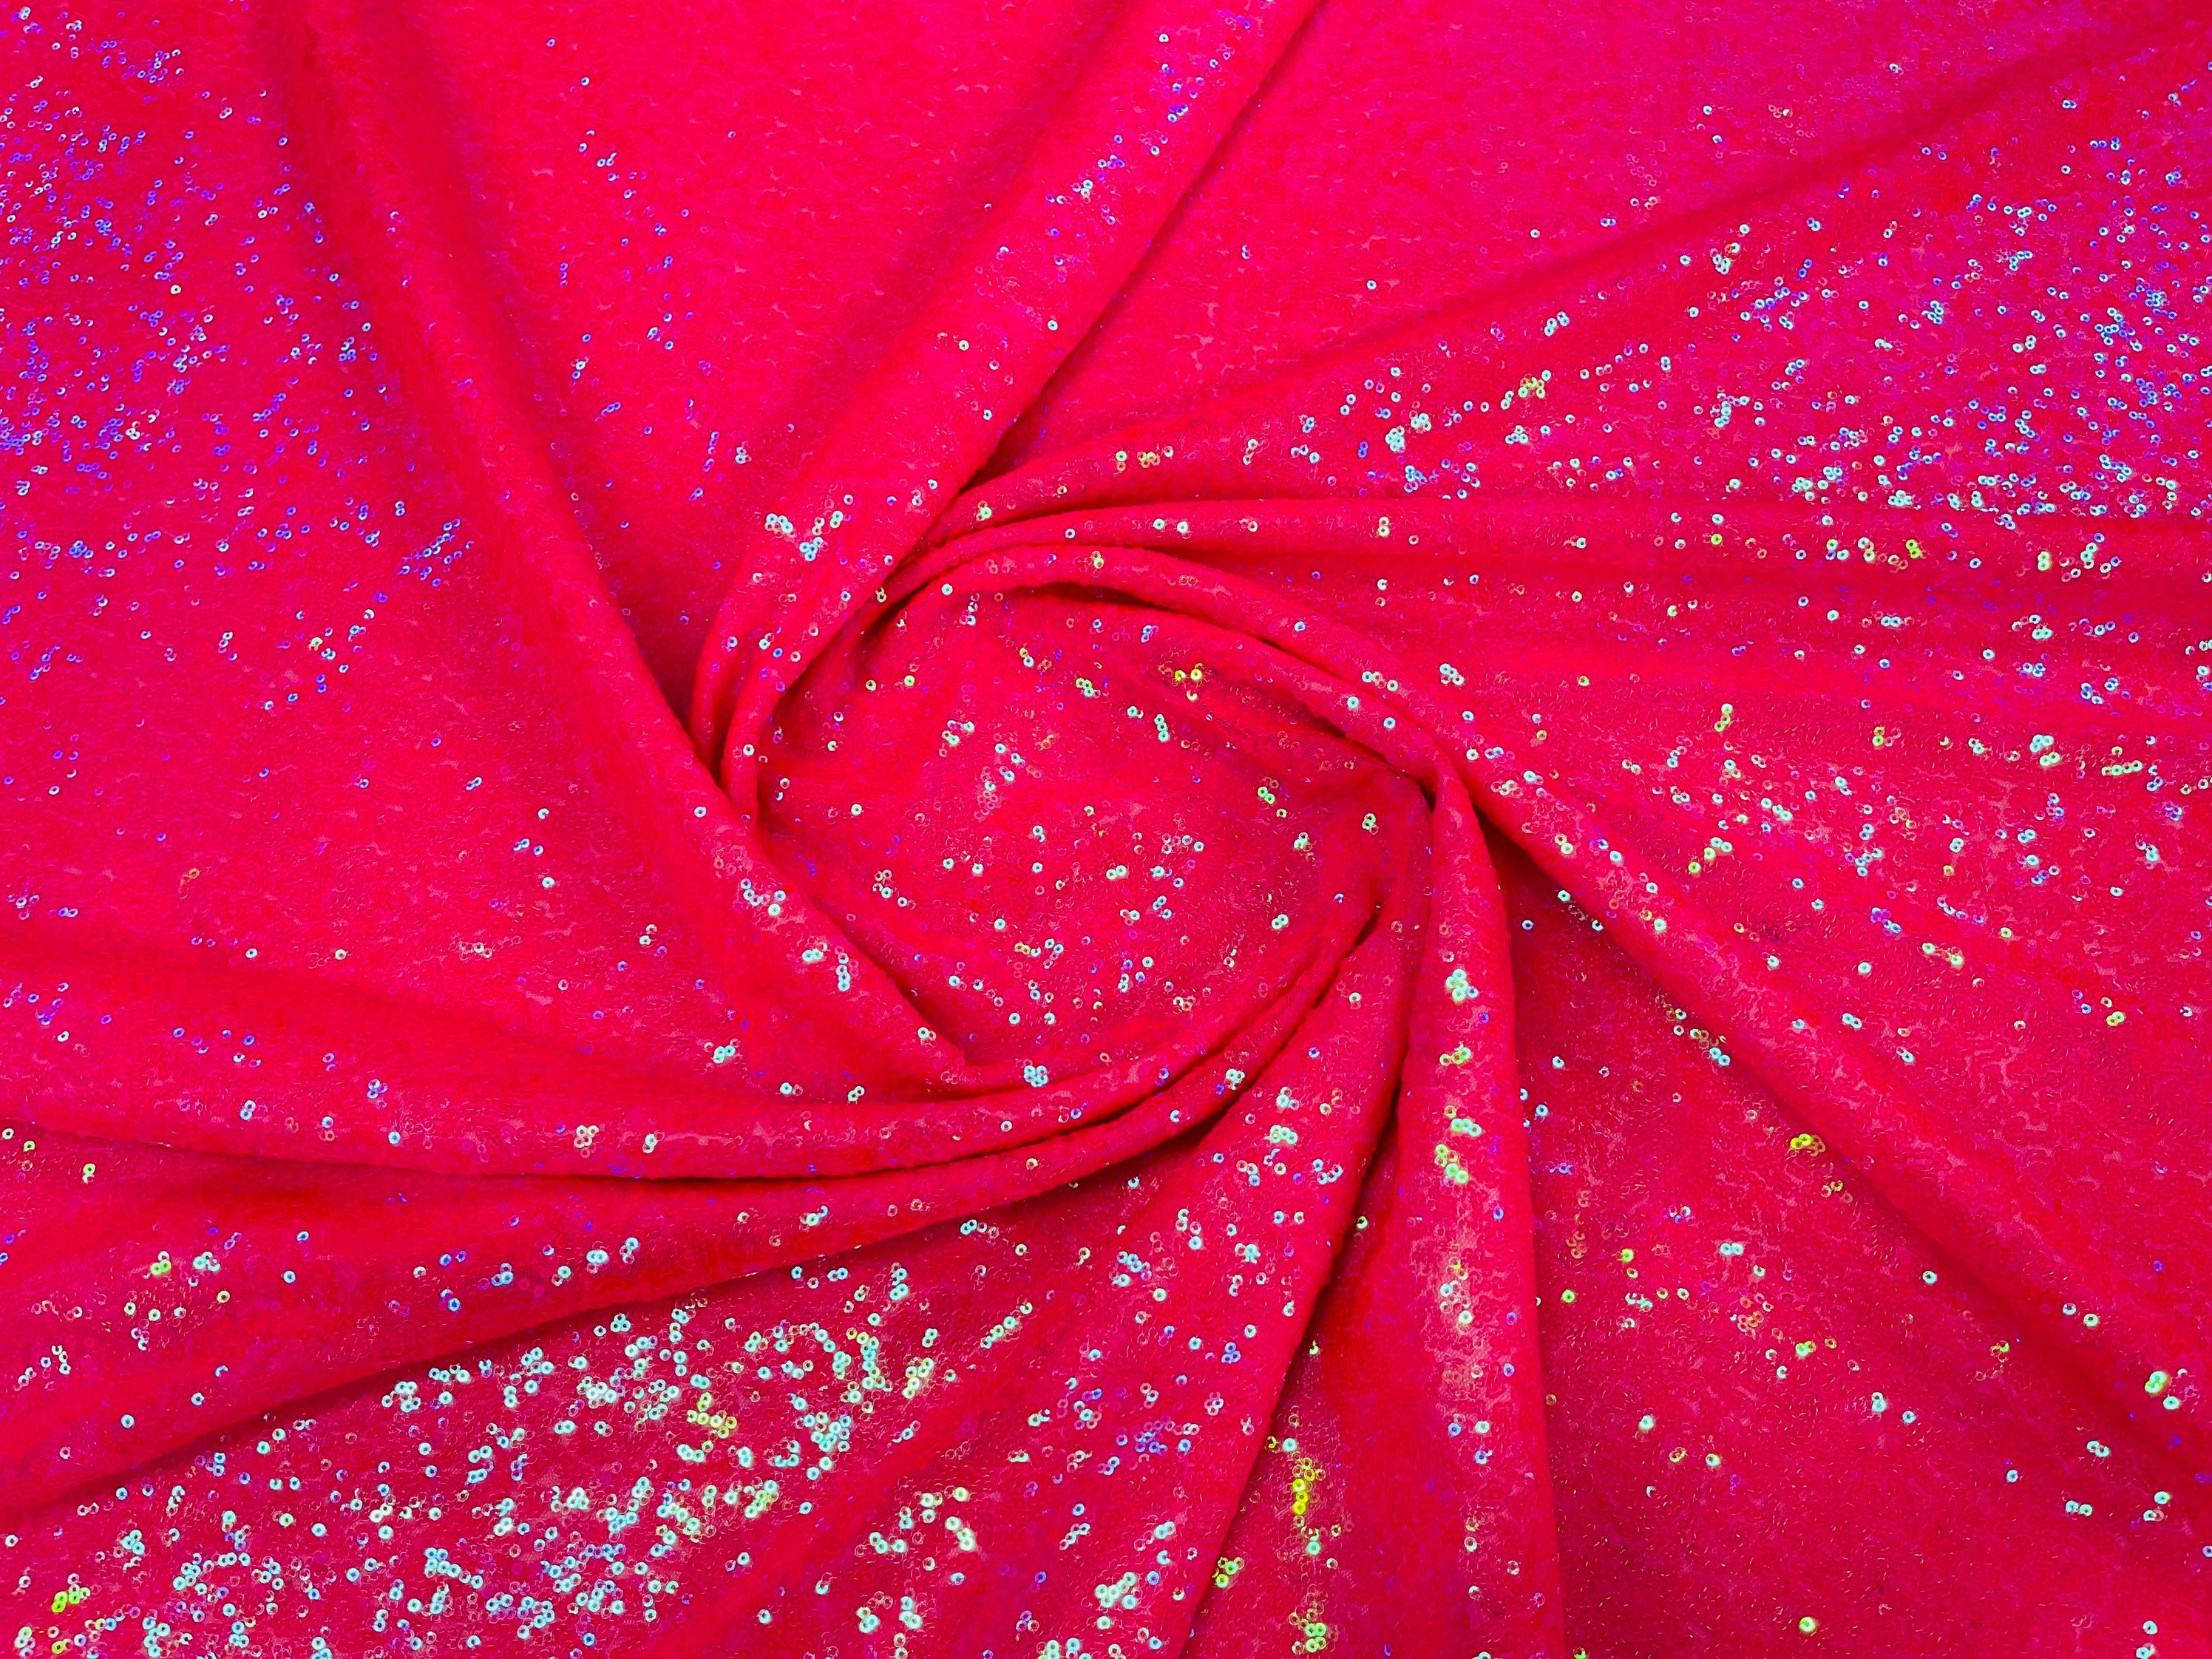 Red Mini Glitz Sequin Fabric